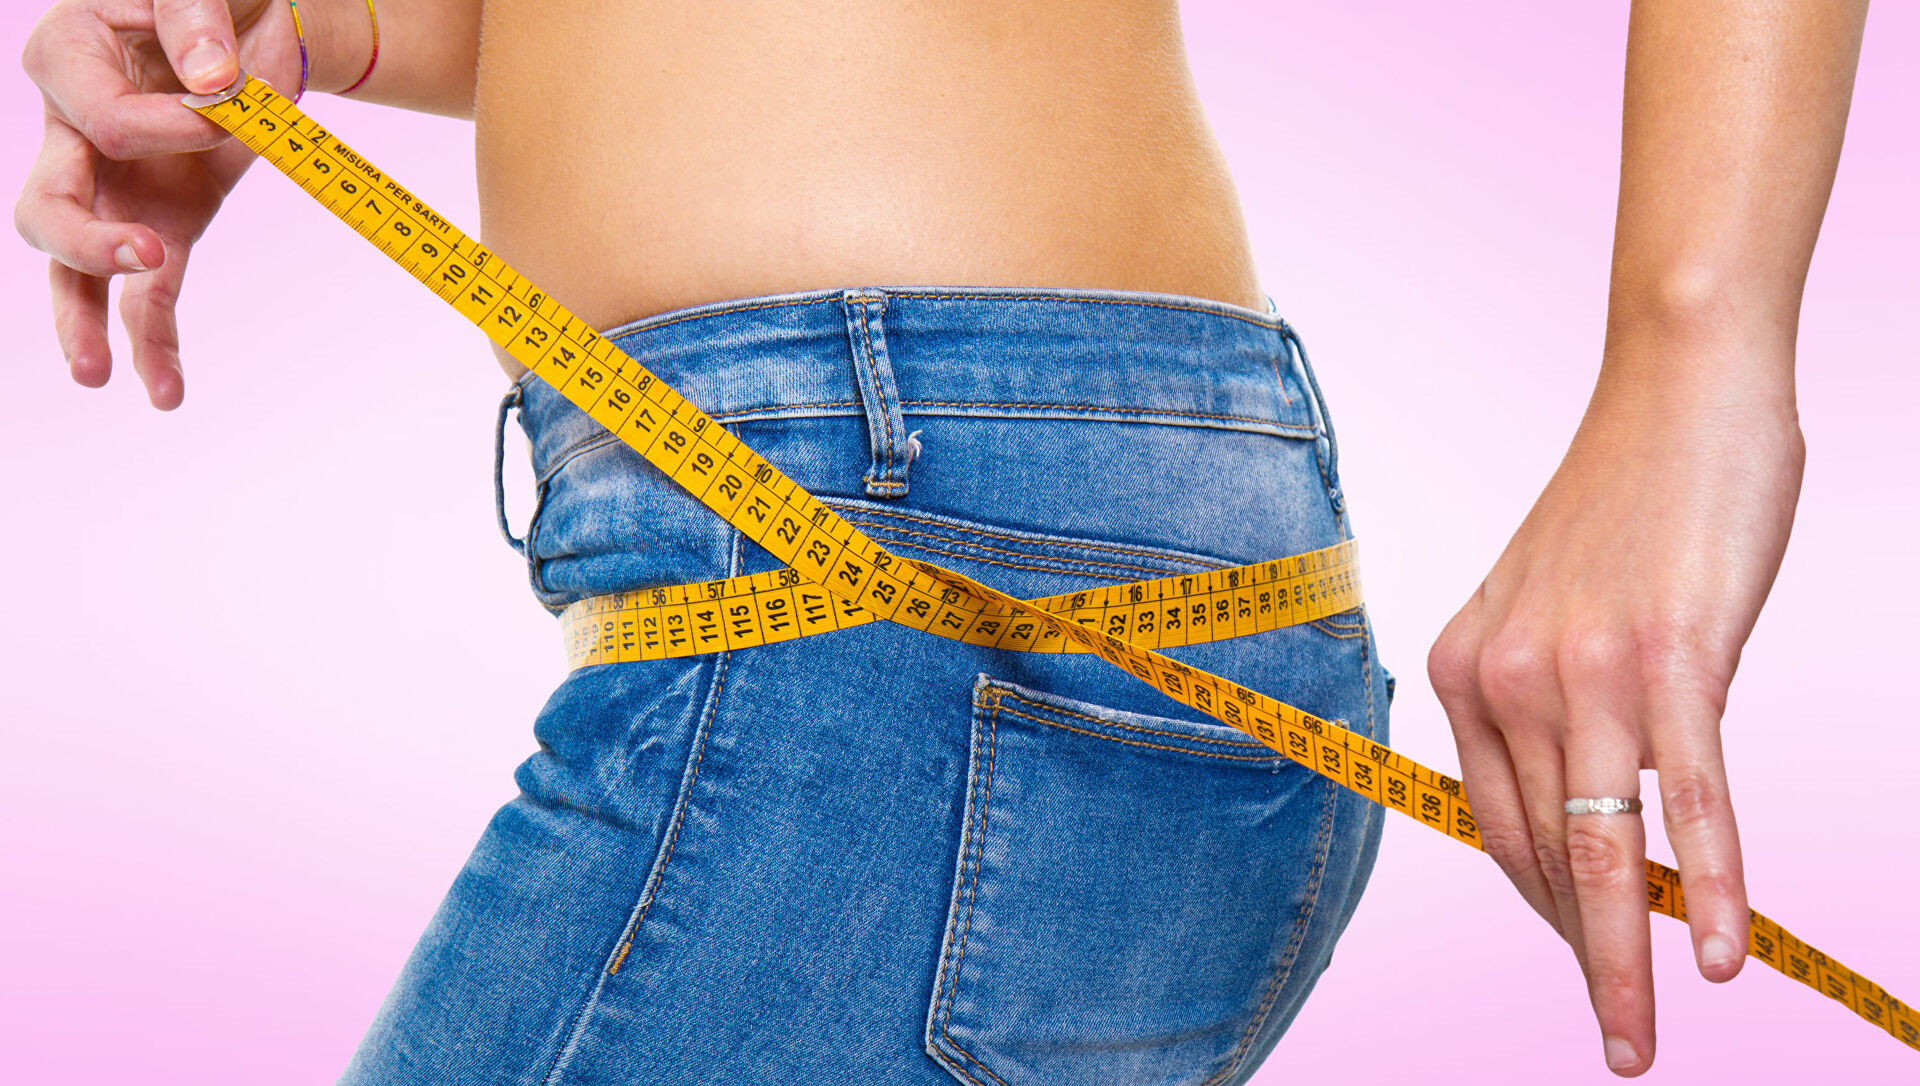 عوارض احتمالی کاهش وزن سریع با جراحی لاغری